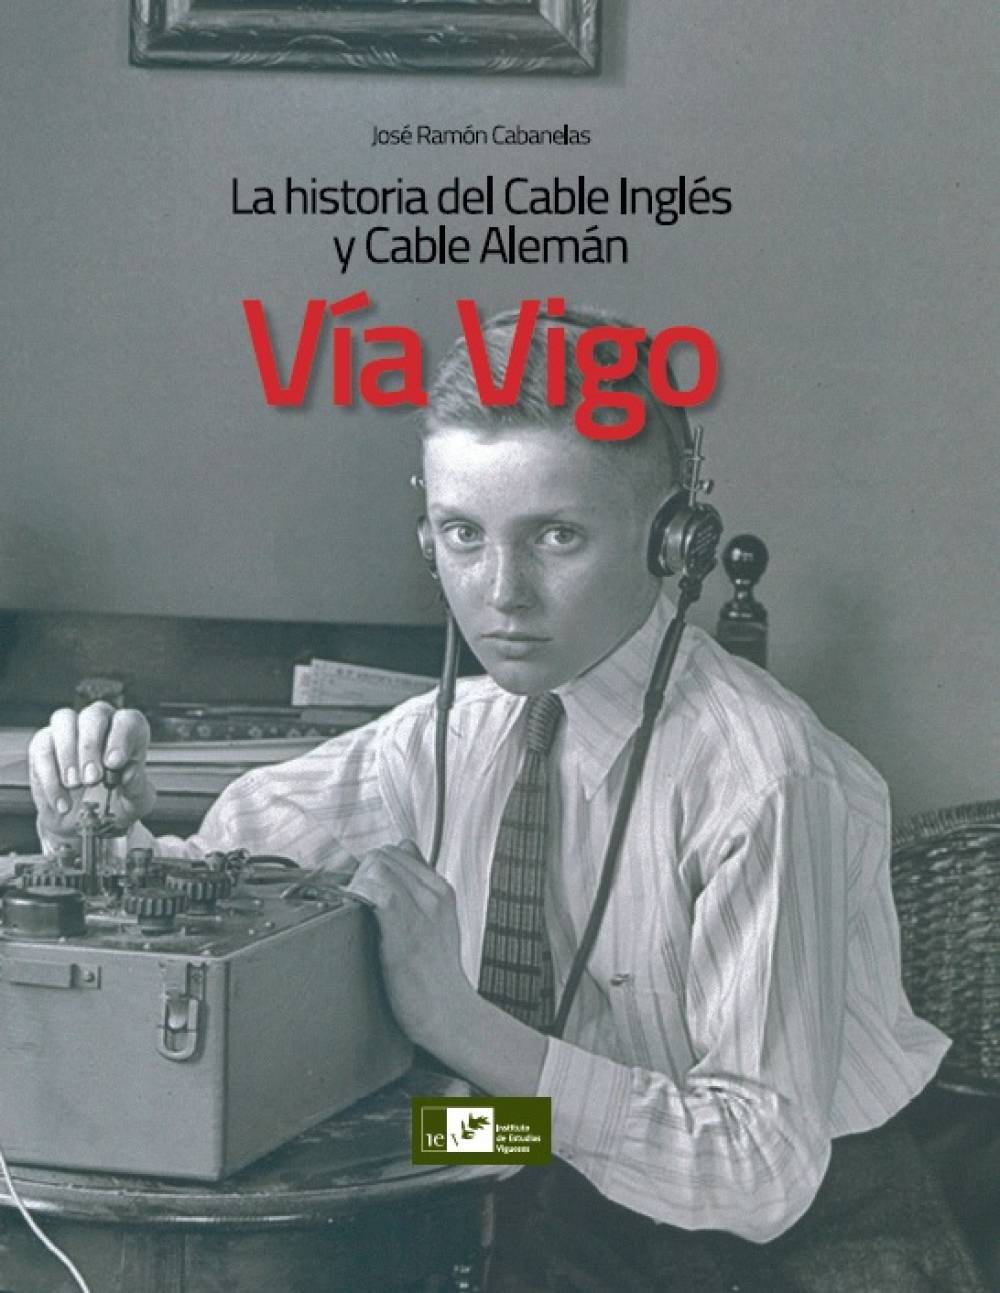 "Vía Vigo. La historia del Cable Inglés y Cable Alemán"